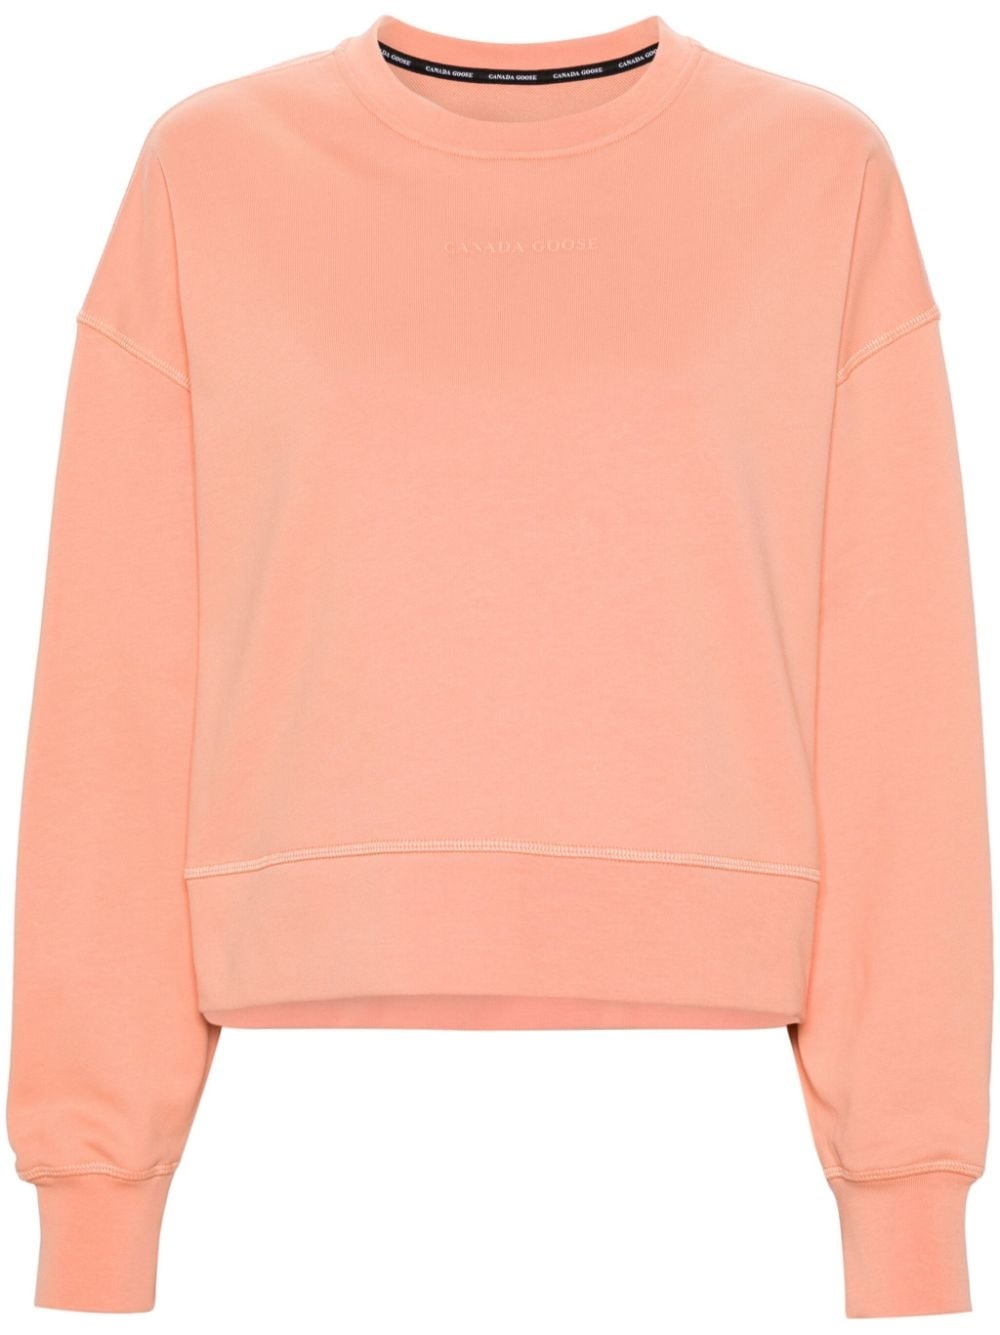 Muskoka cotton sweatshirt - 1